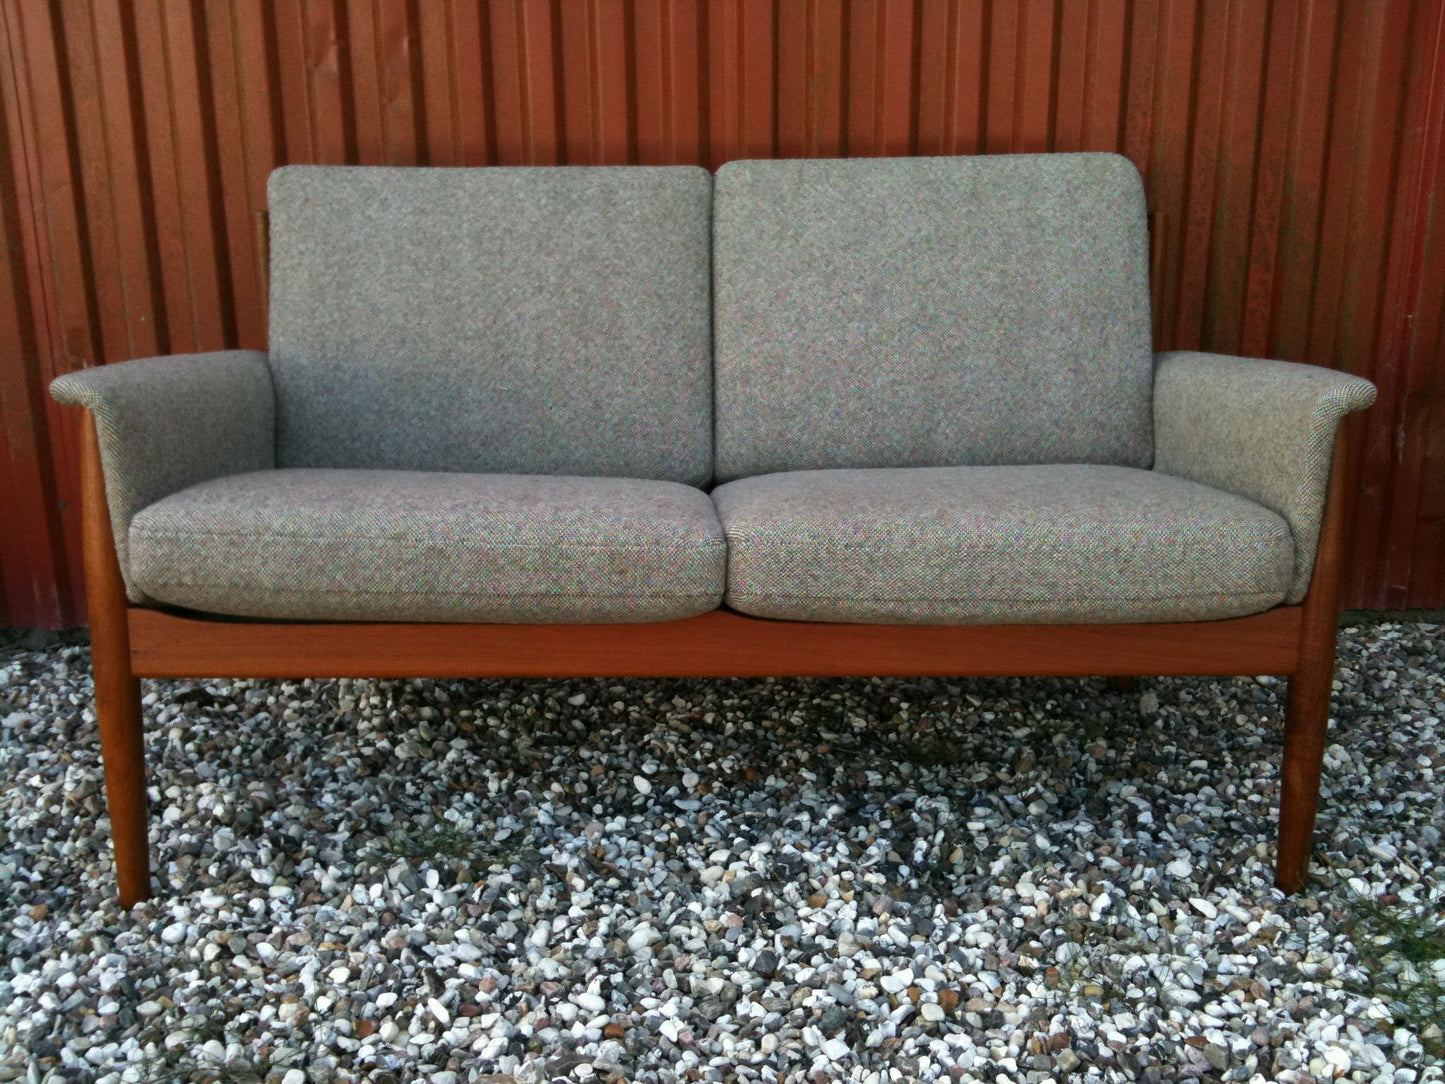 Two-seater Sofa by Finn Juhl